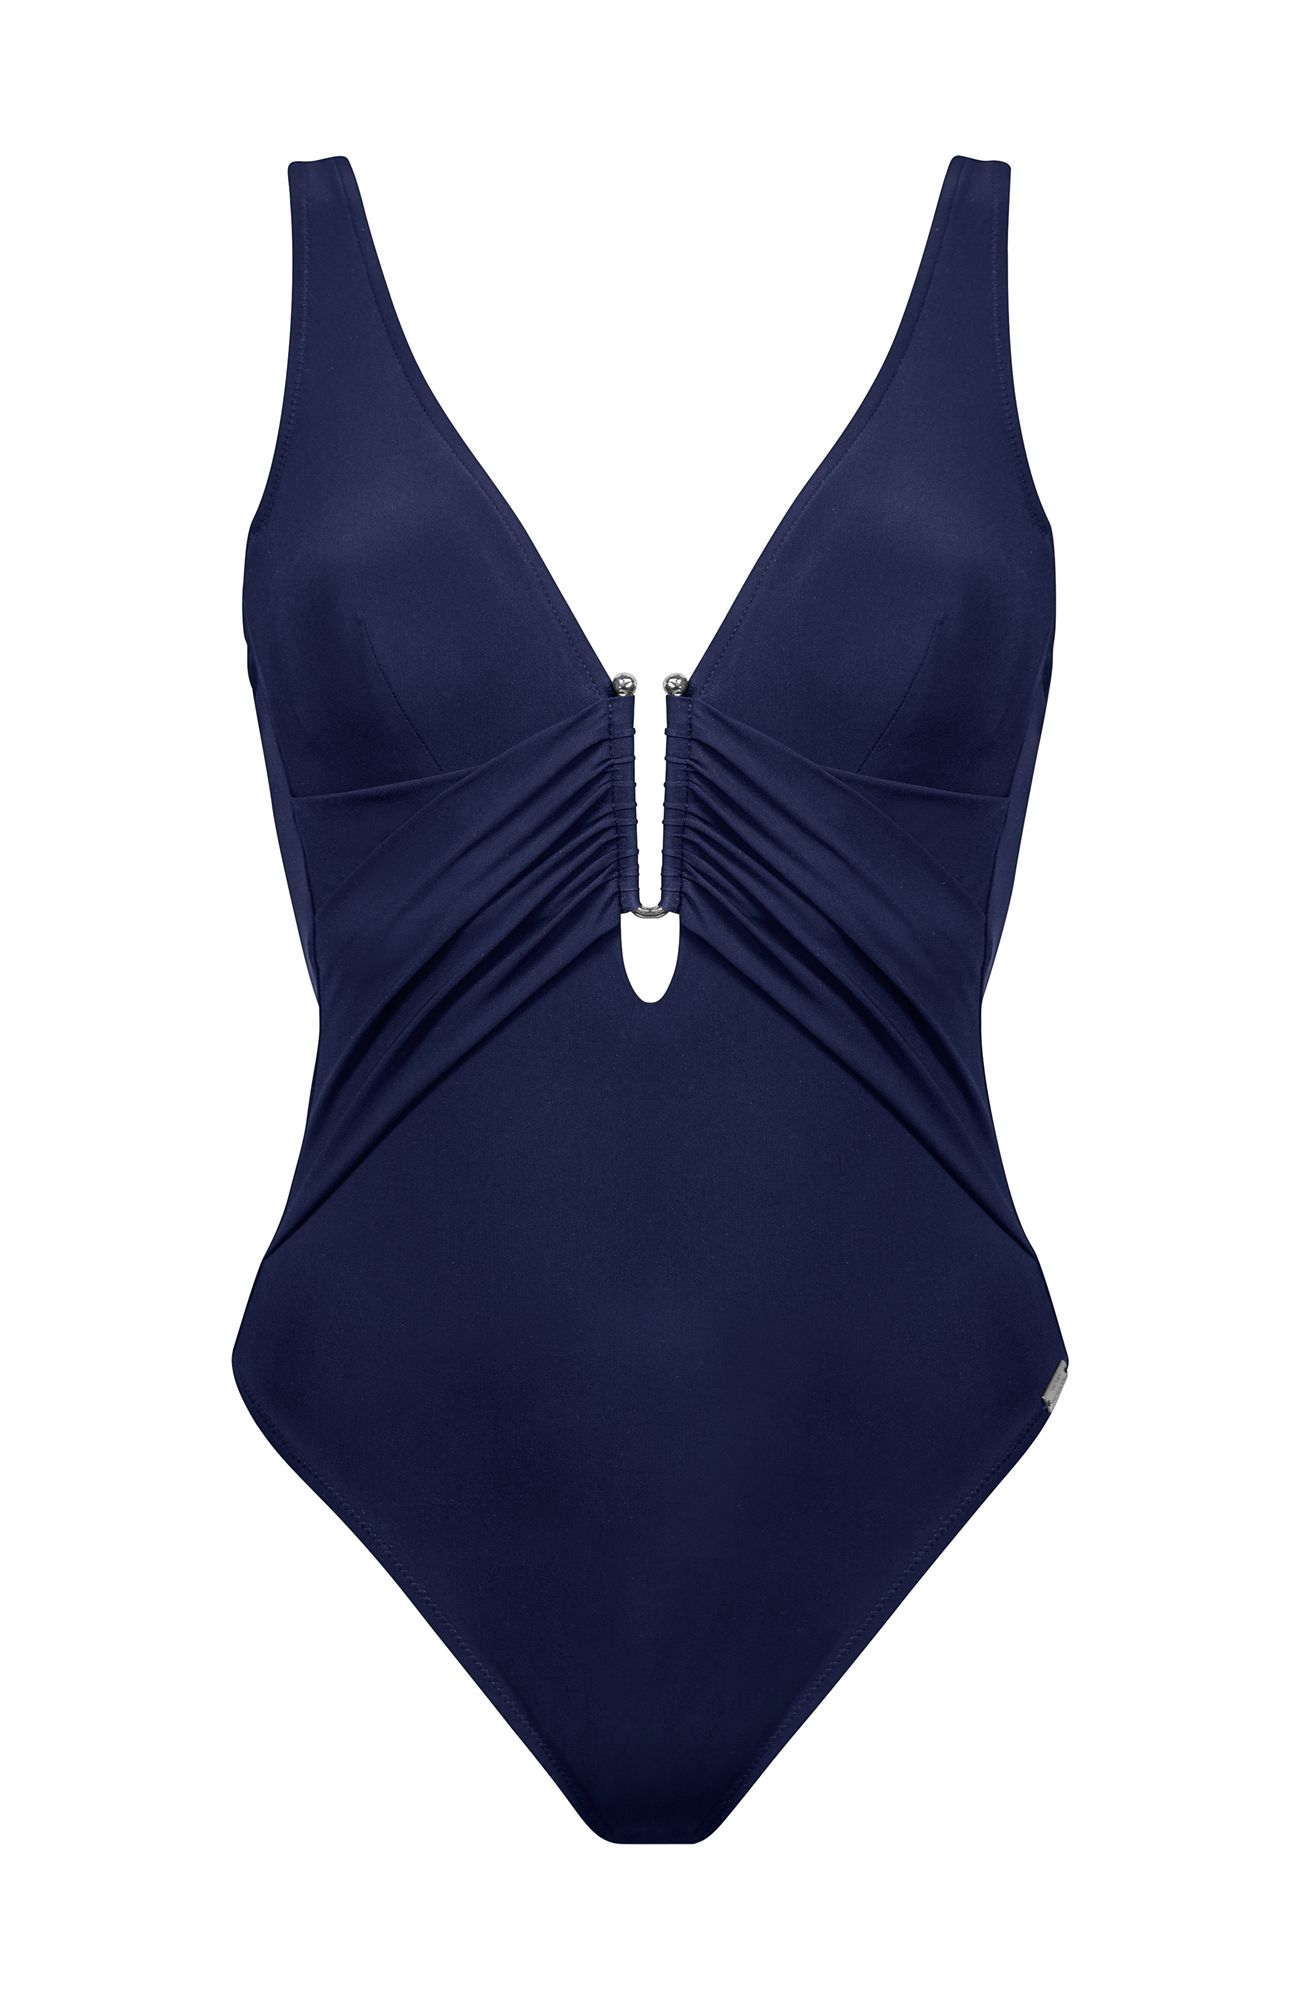 Слитный купальник с глубоким V-образным вырезом цвет синий (044) Maryan  Mehlhorn купить в интернет-магазине Estelle Adony